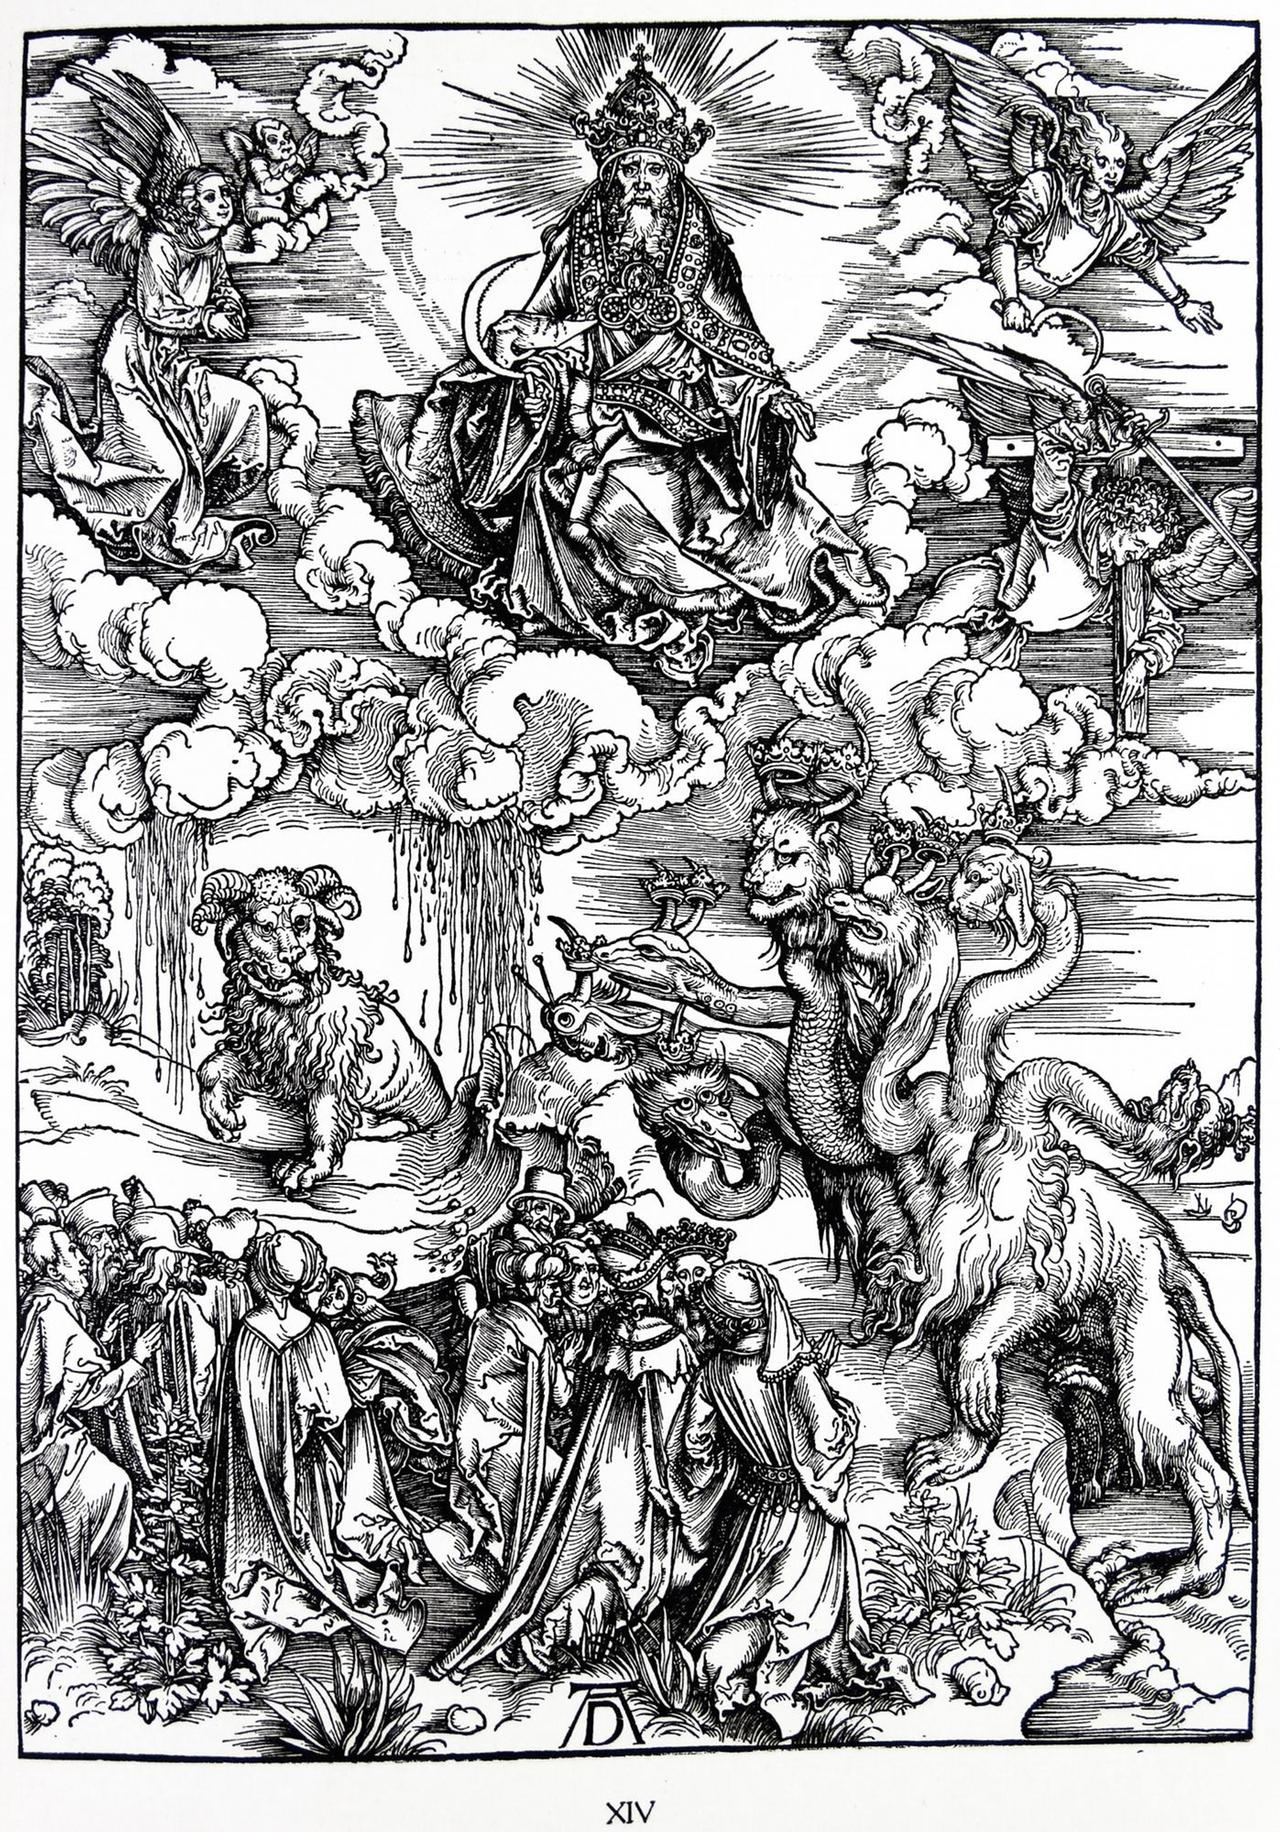 Holzschnitt von Albrecht Dürer zur Vorrede der Offenbarung des Johannes (1522)